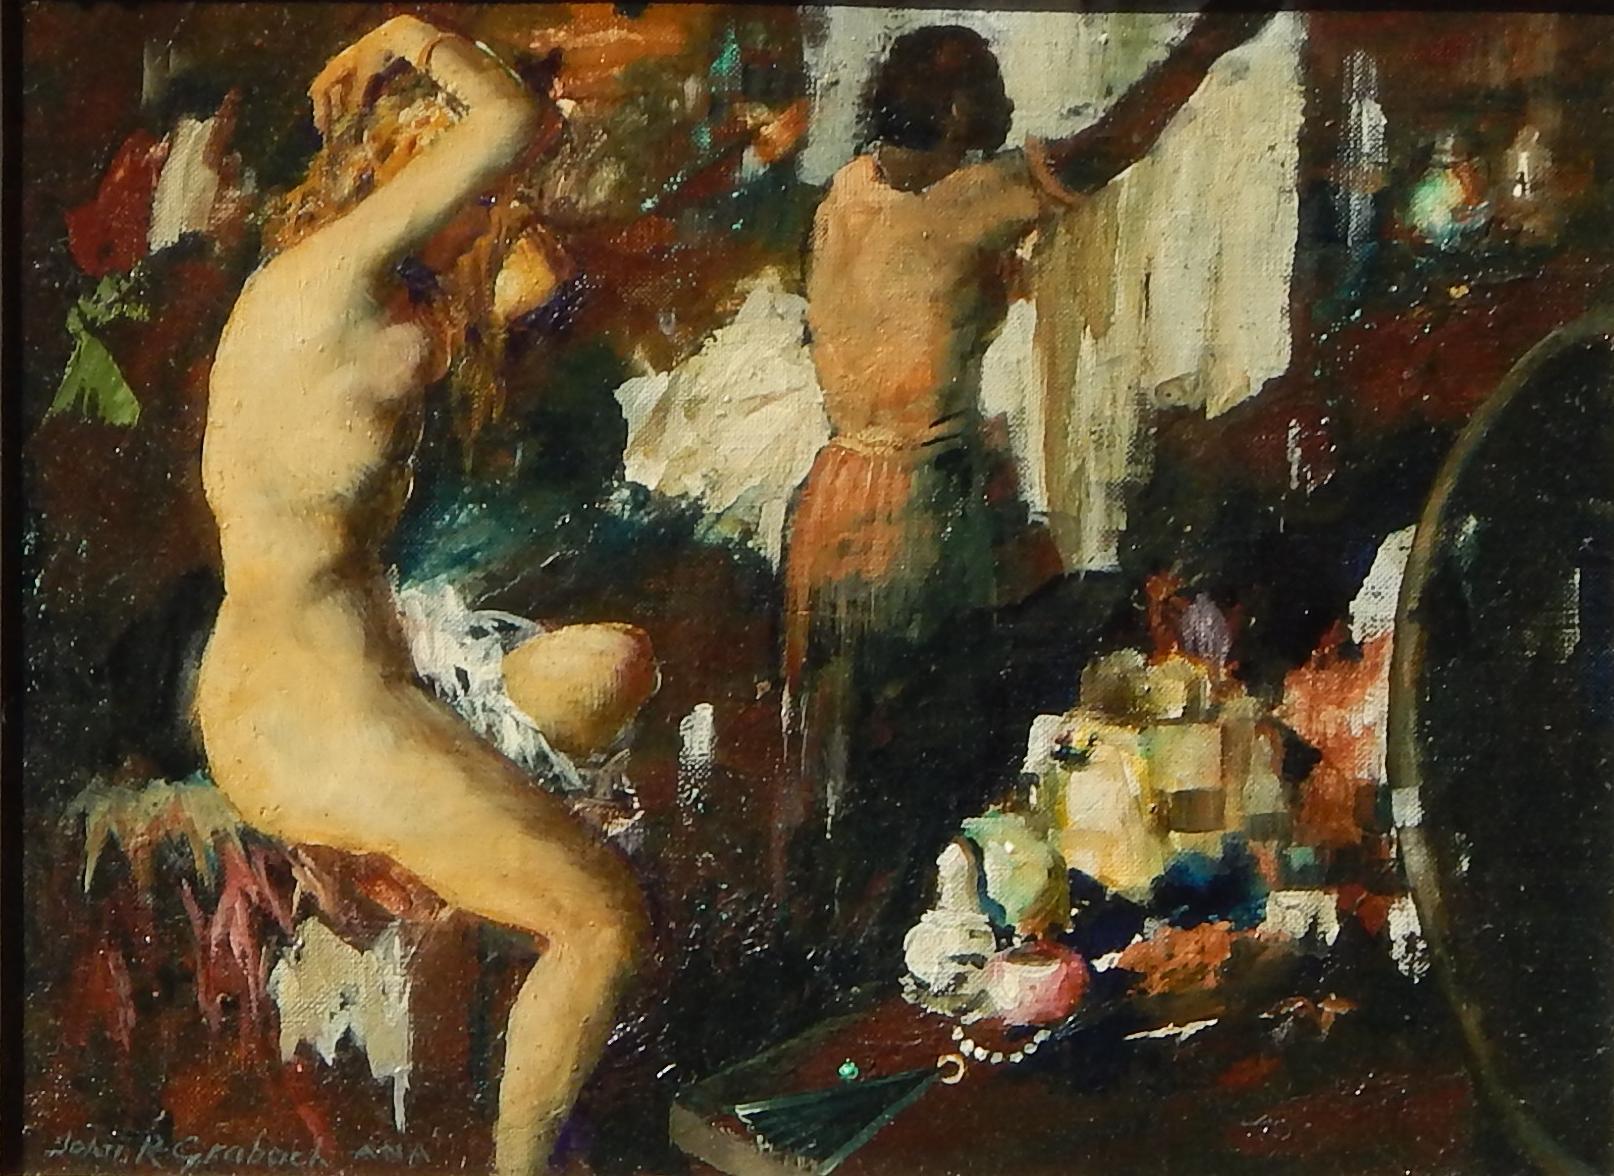 Magnifique peinture impressionniste de John R. Grabach (1886-1981), artiste et enseignant très réputé du New Jersey.
Cette œuvre est une huile sur toile posée sur un panneau et mesure 12 1/4